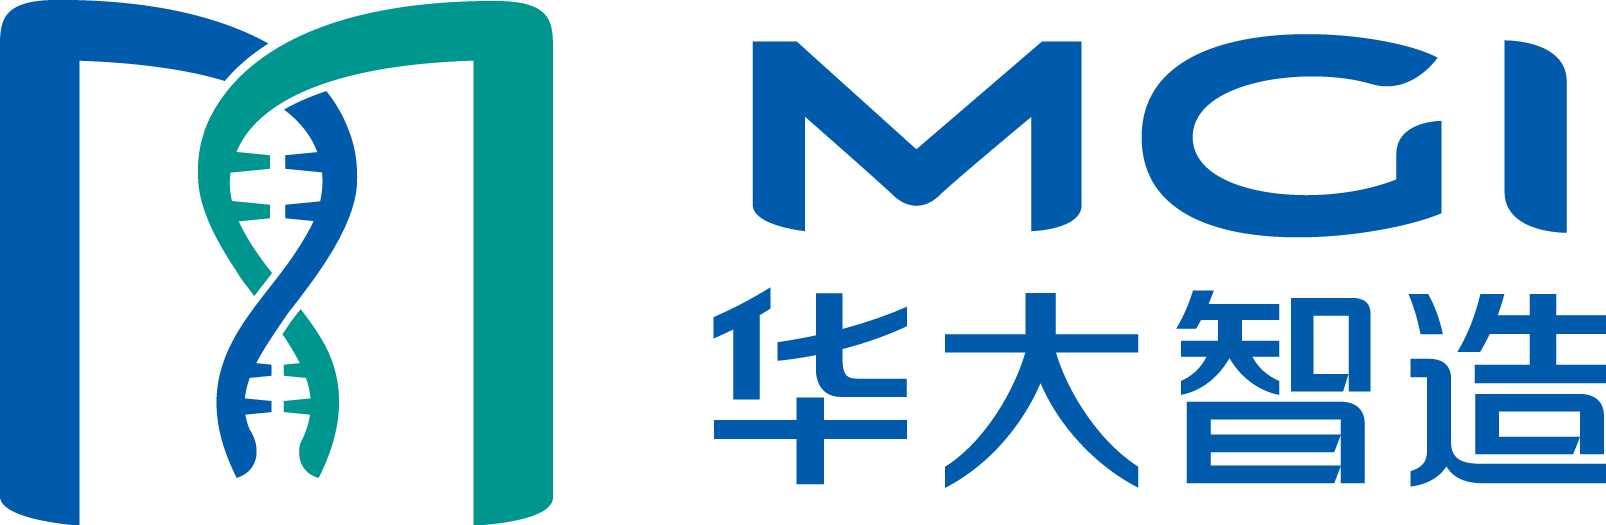 MGI Tech logo